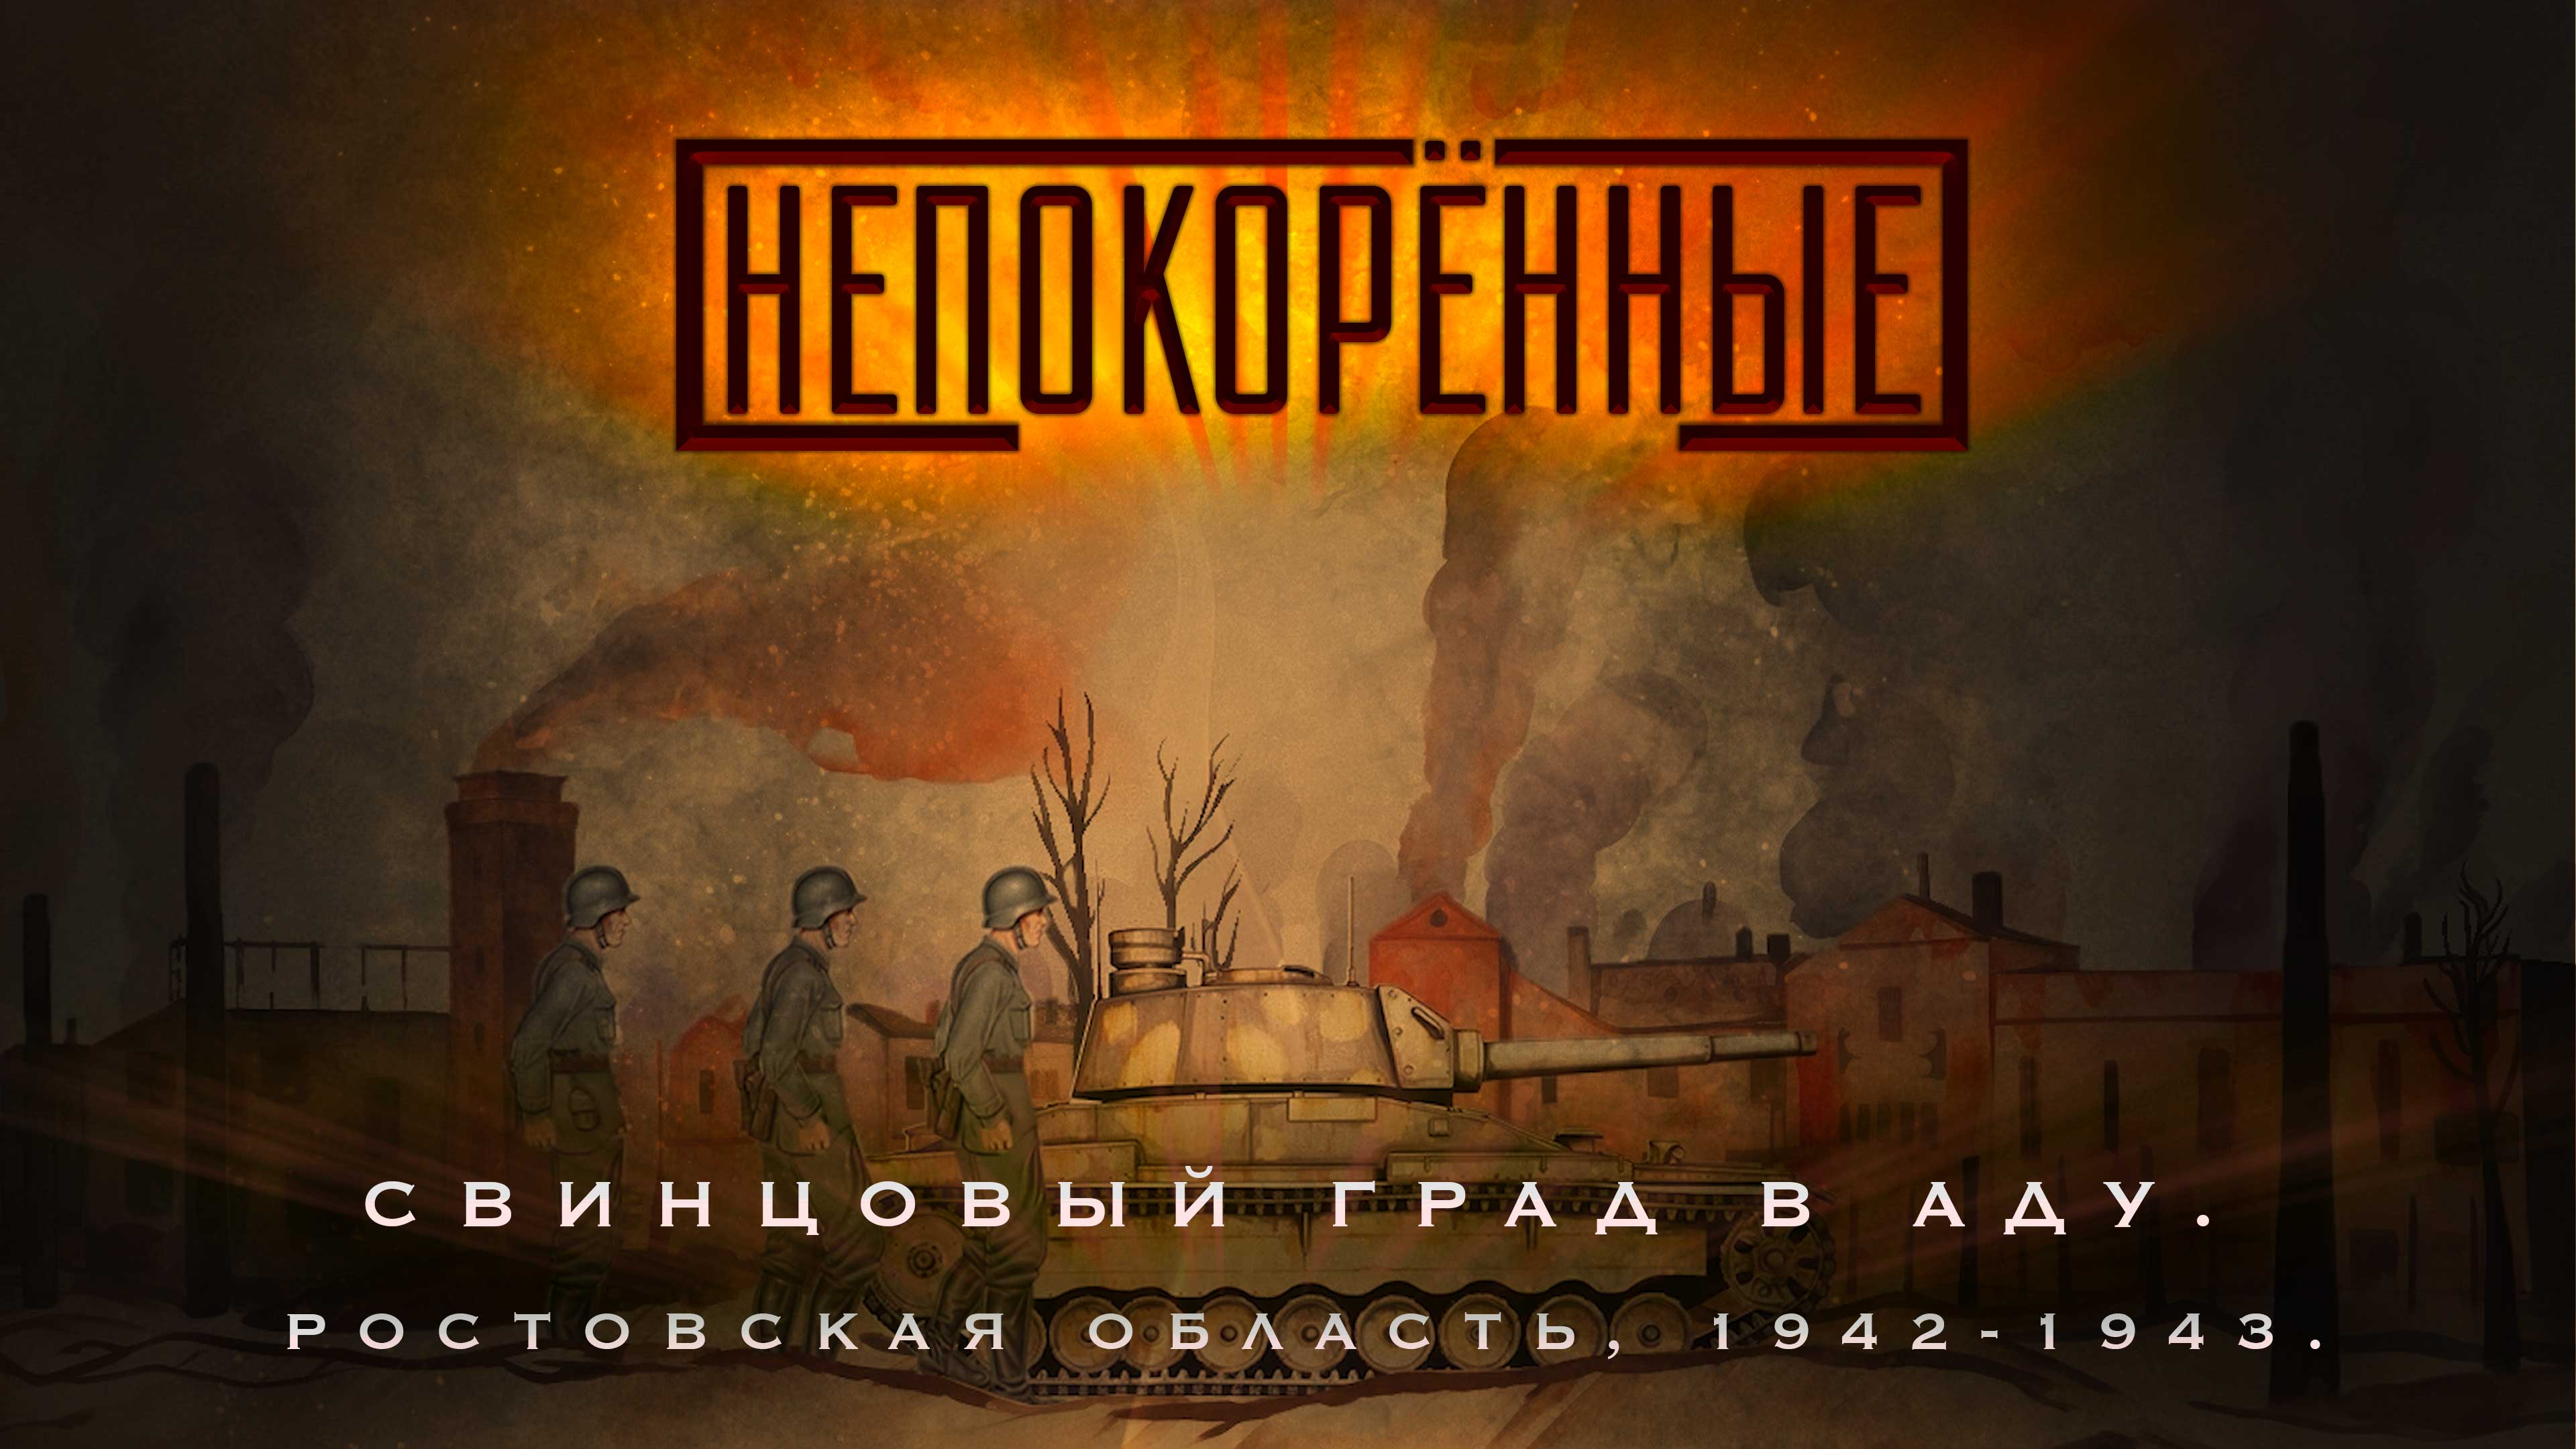 Ростовская область, 1942-1943.